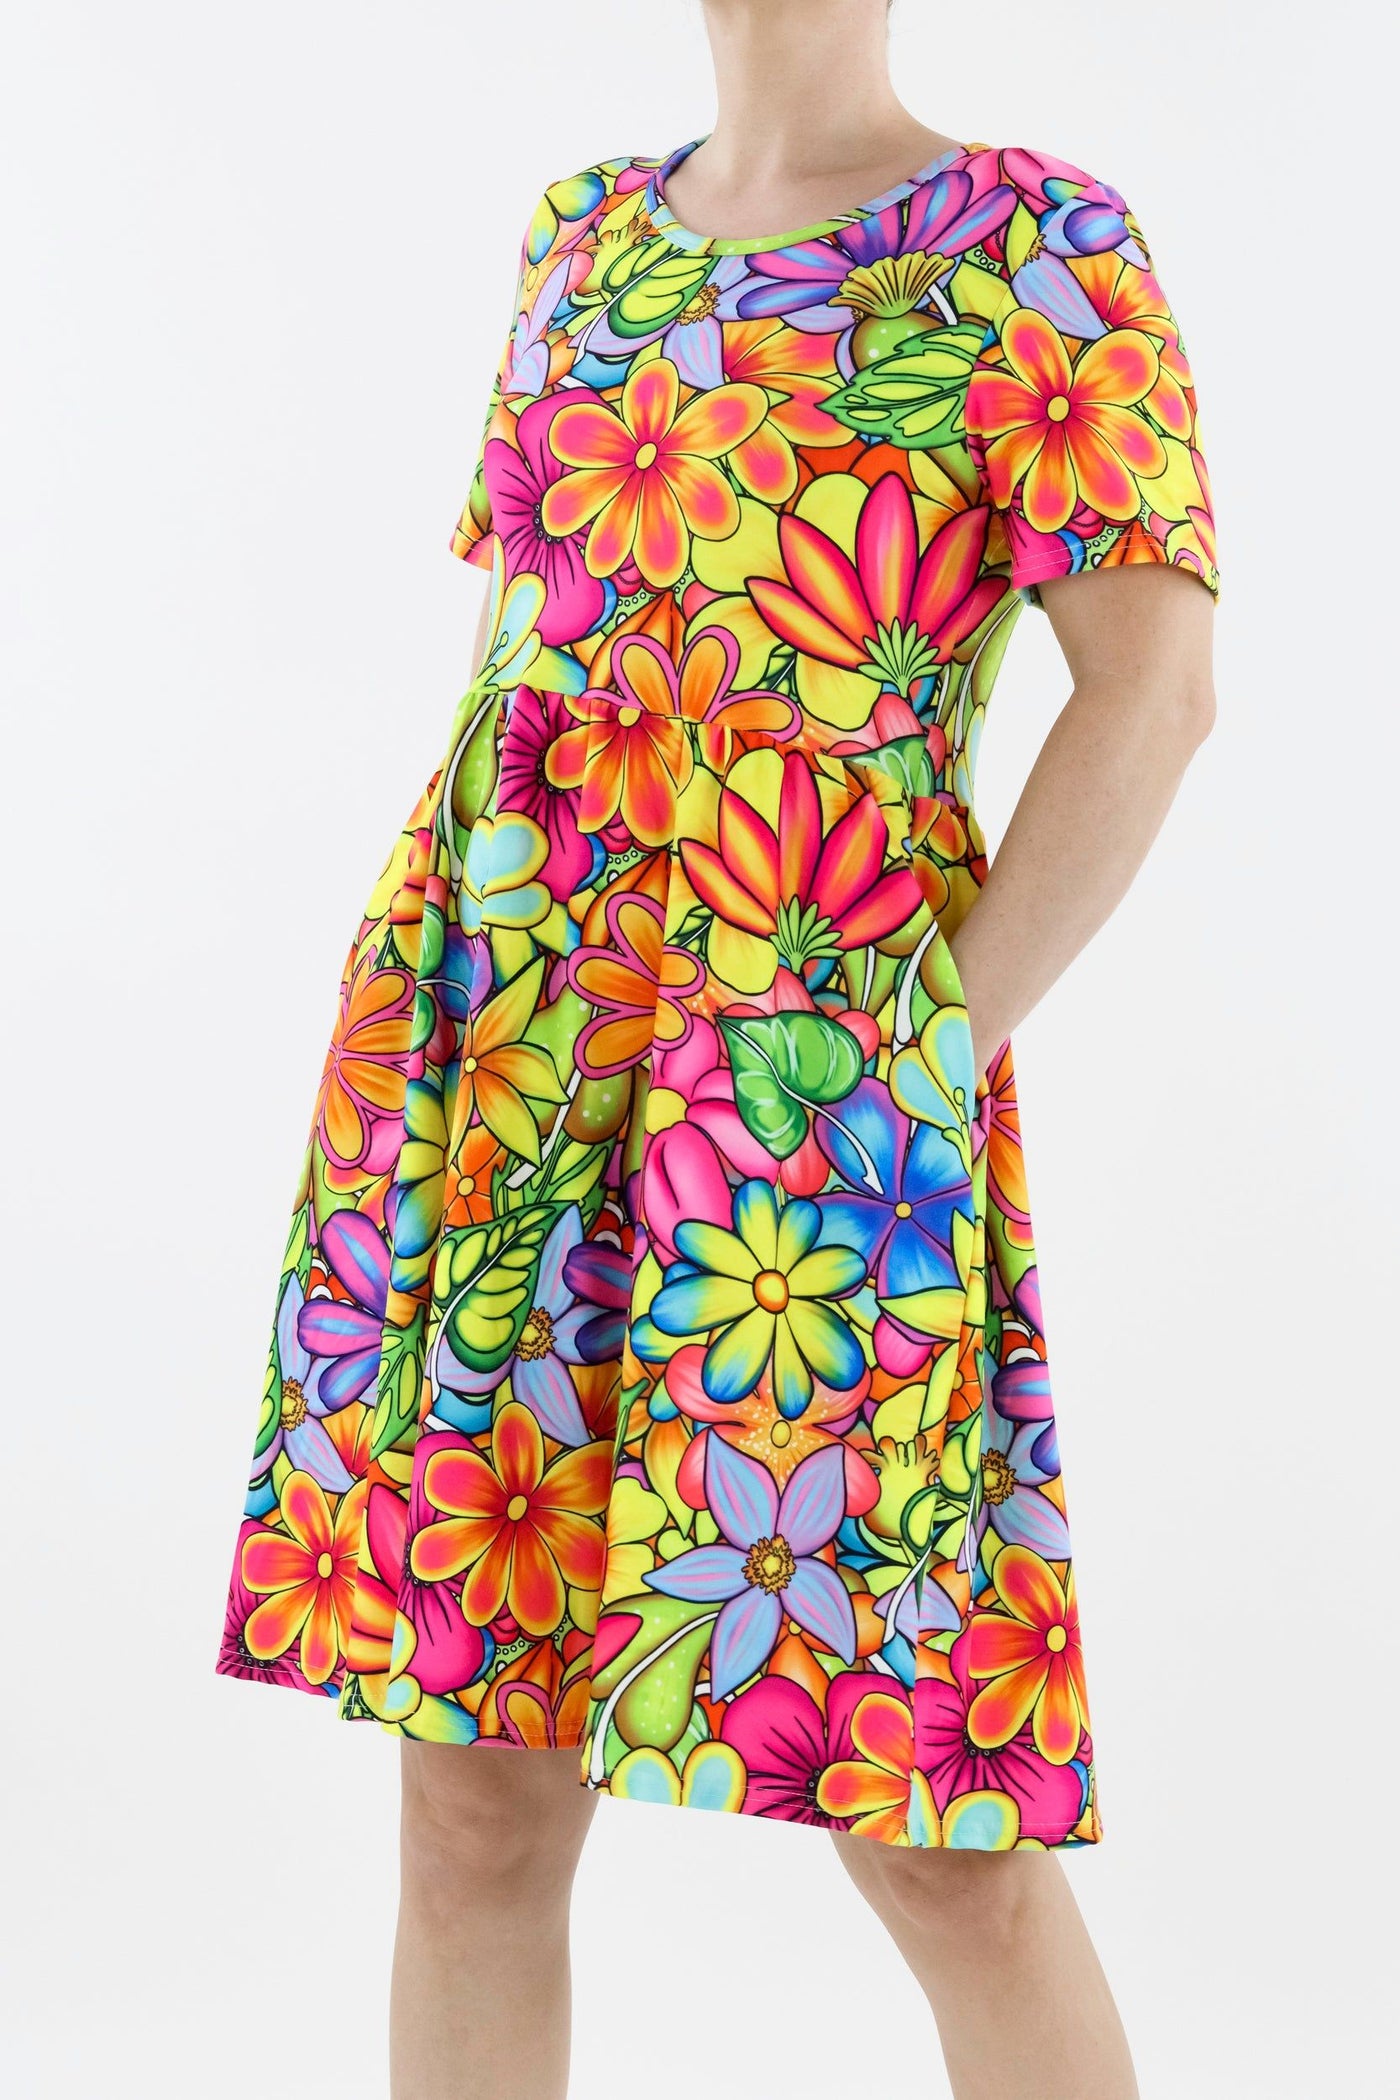 Tutti Frutti Flower - Short Sleeve Skater Dress - Knee Length - Side Pockets Knee Length Skater Dress Pawlie   